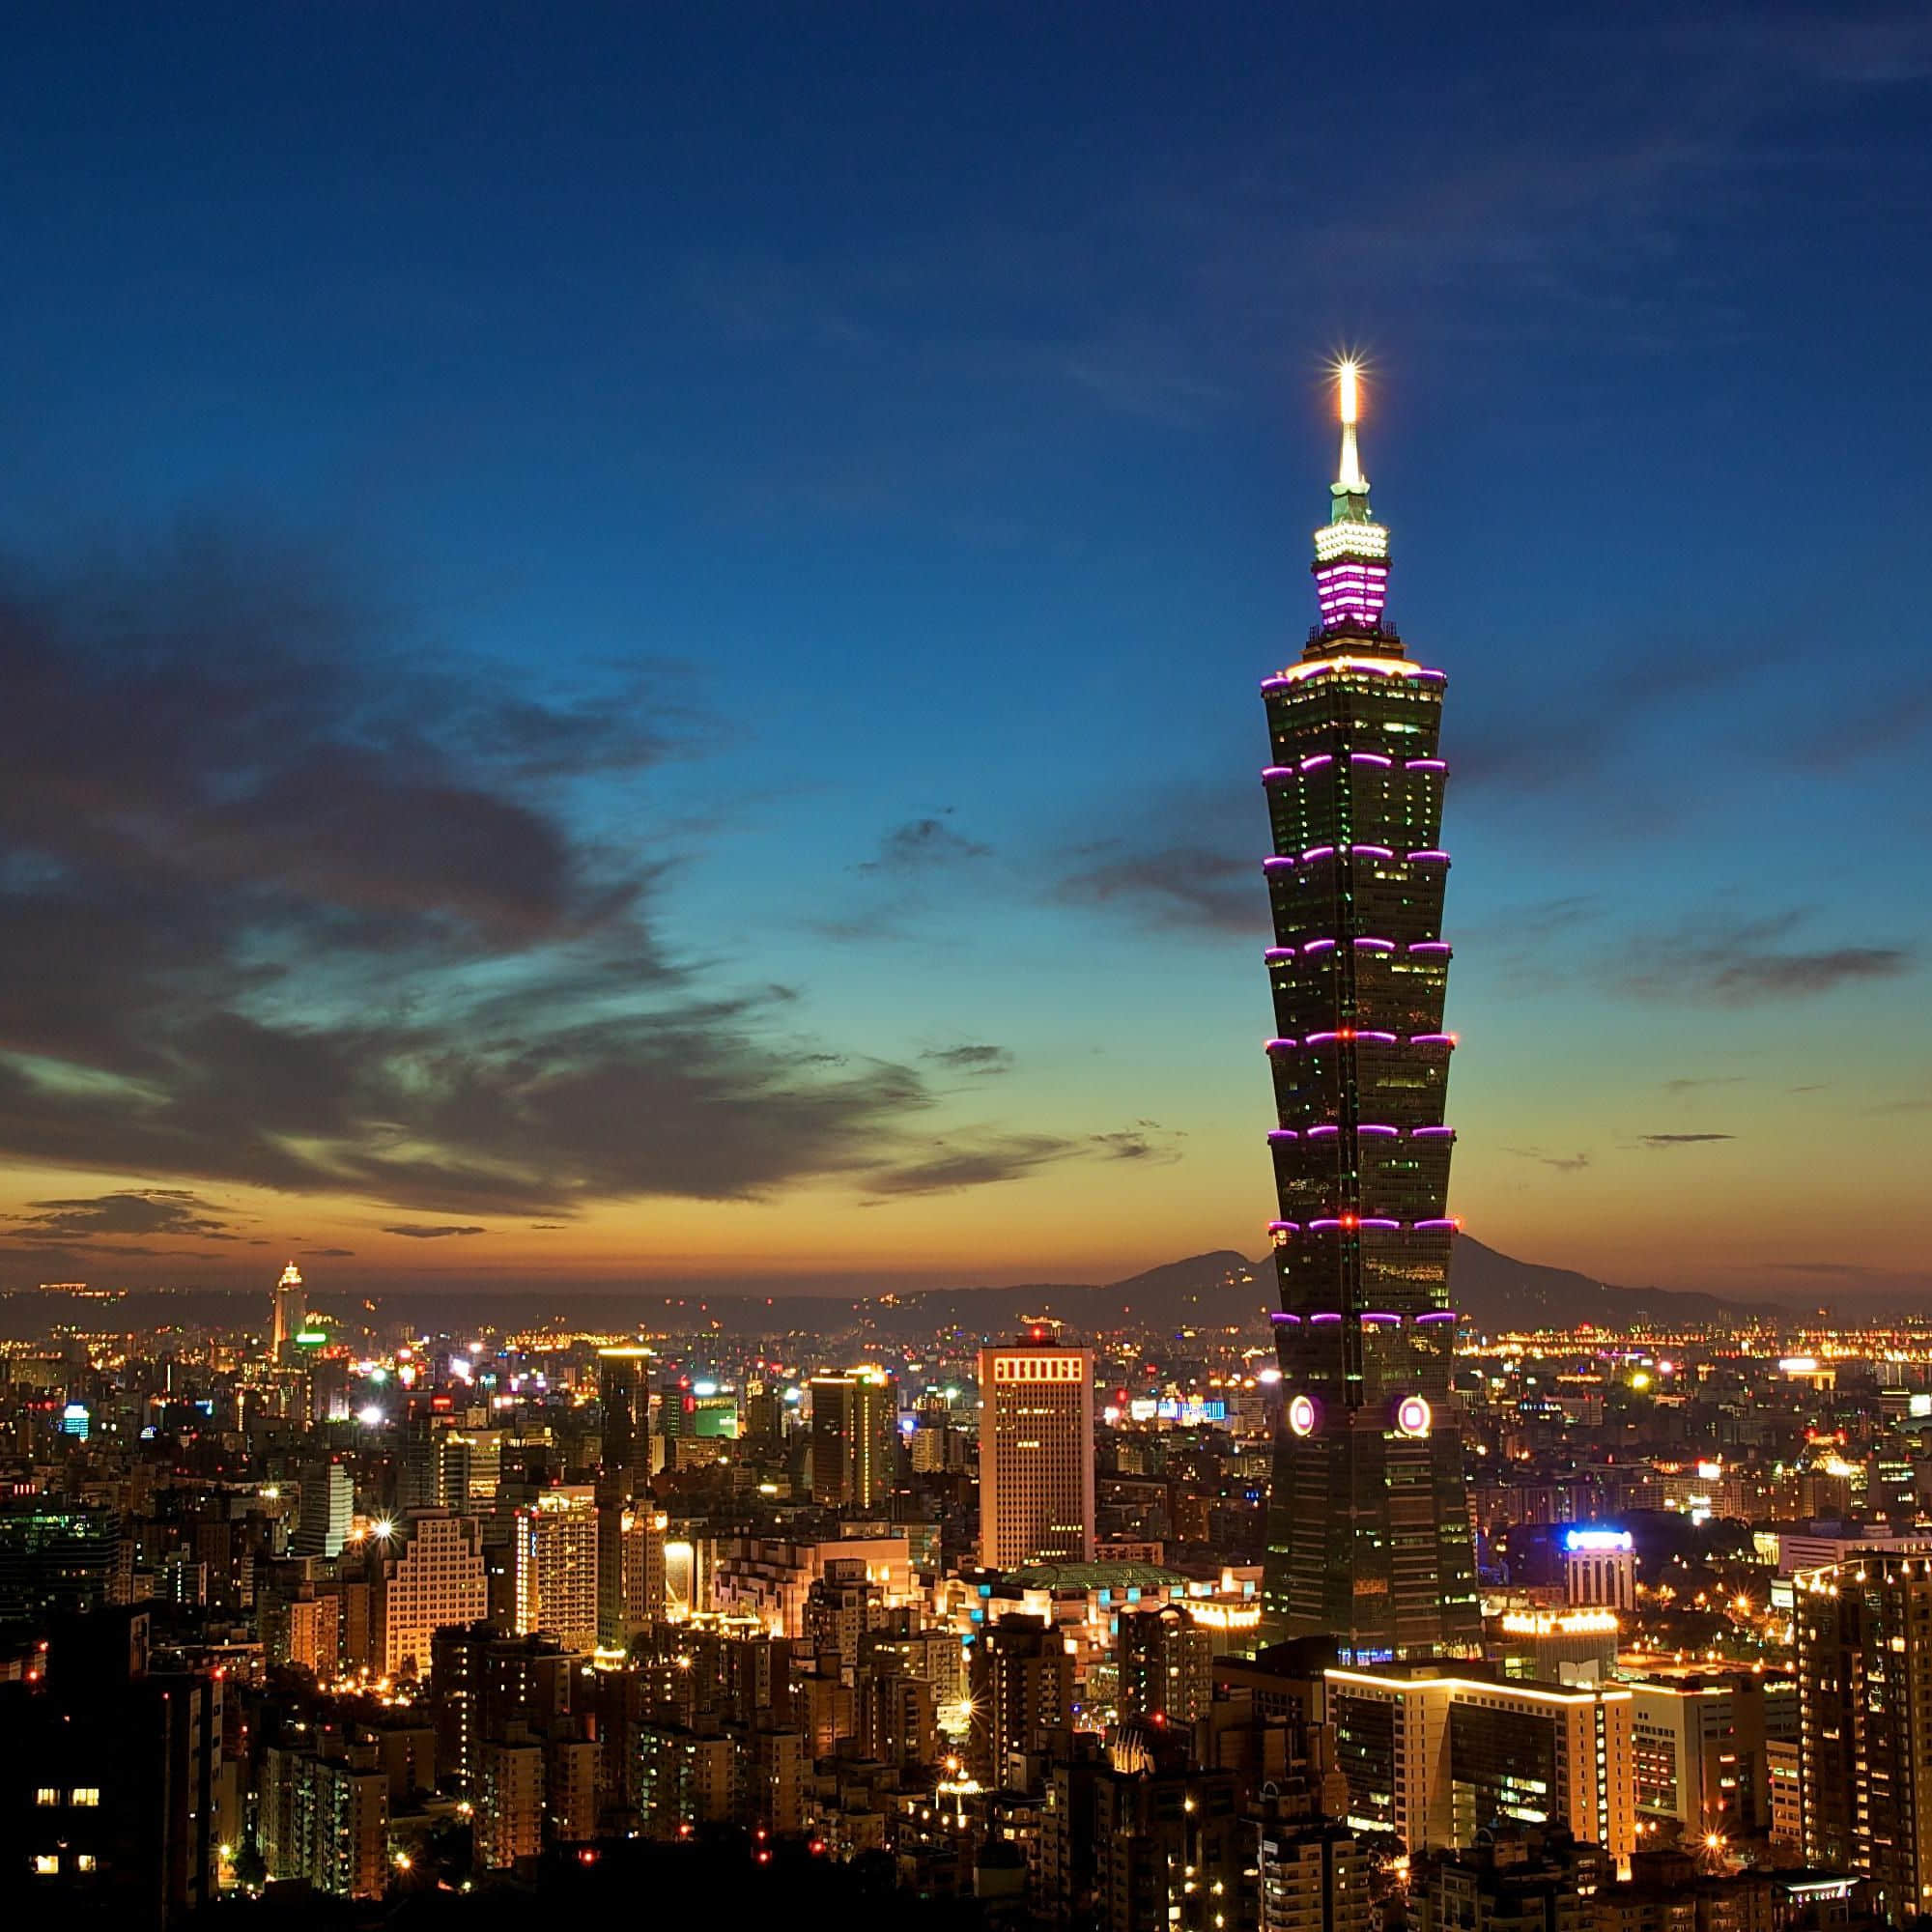 taiwan 101 tower